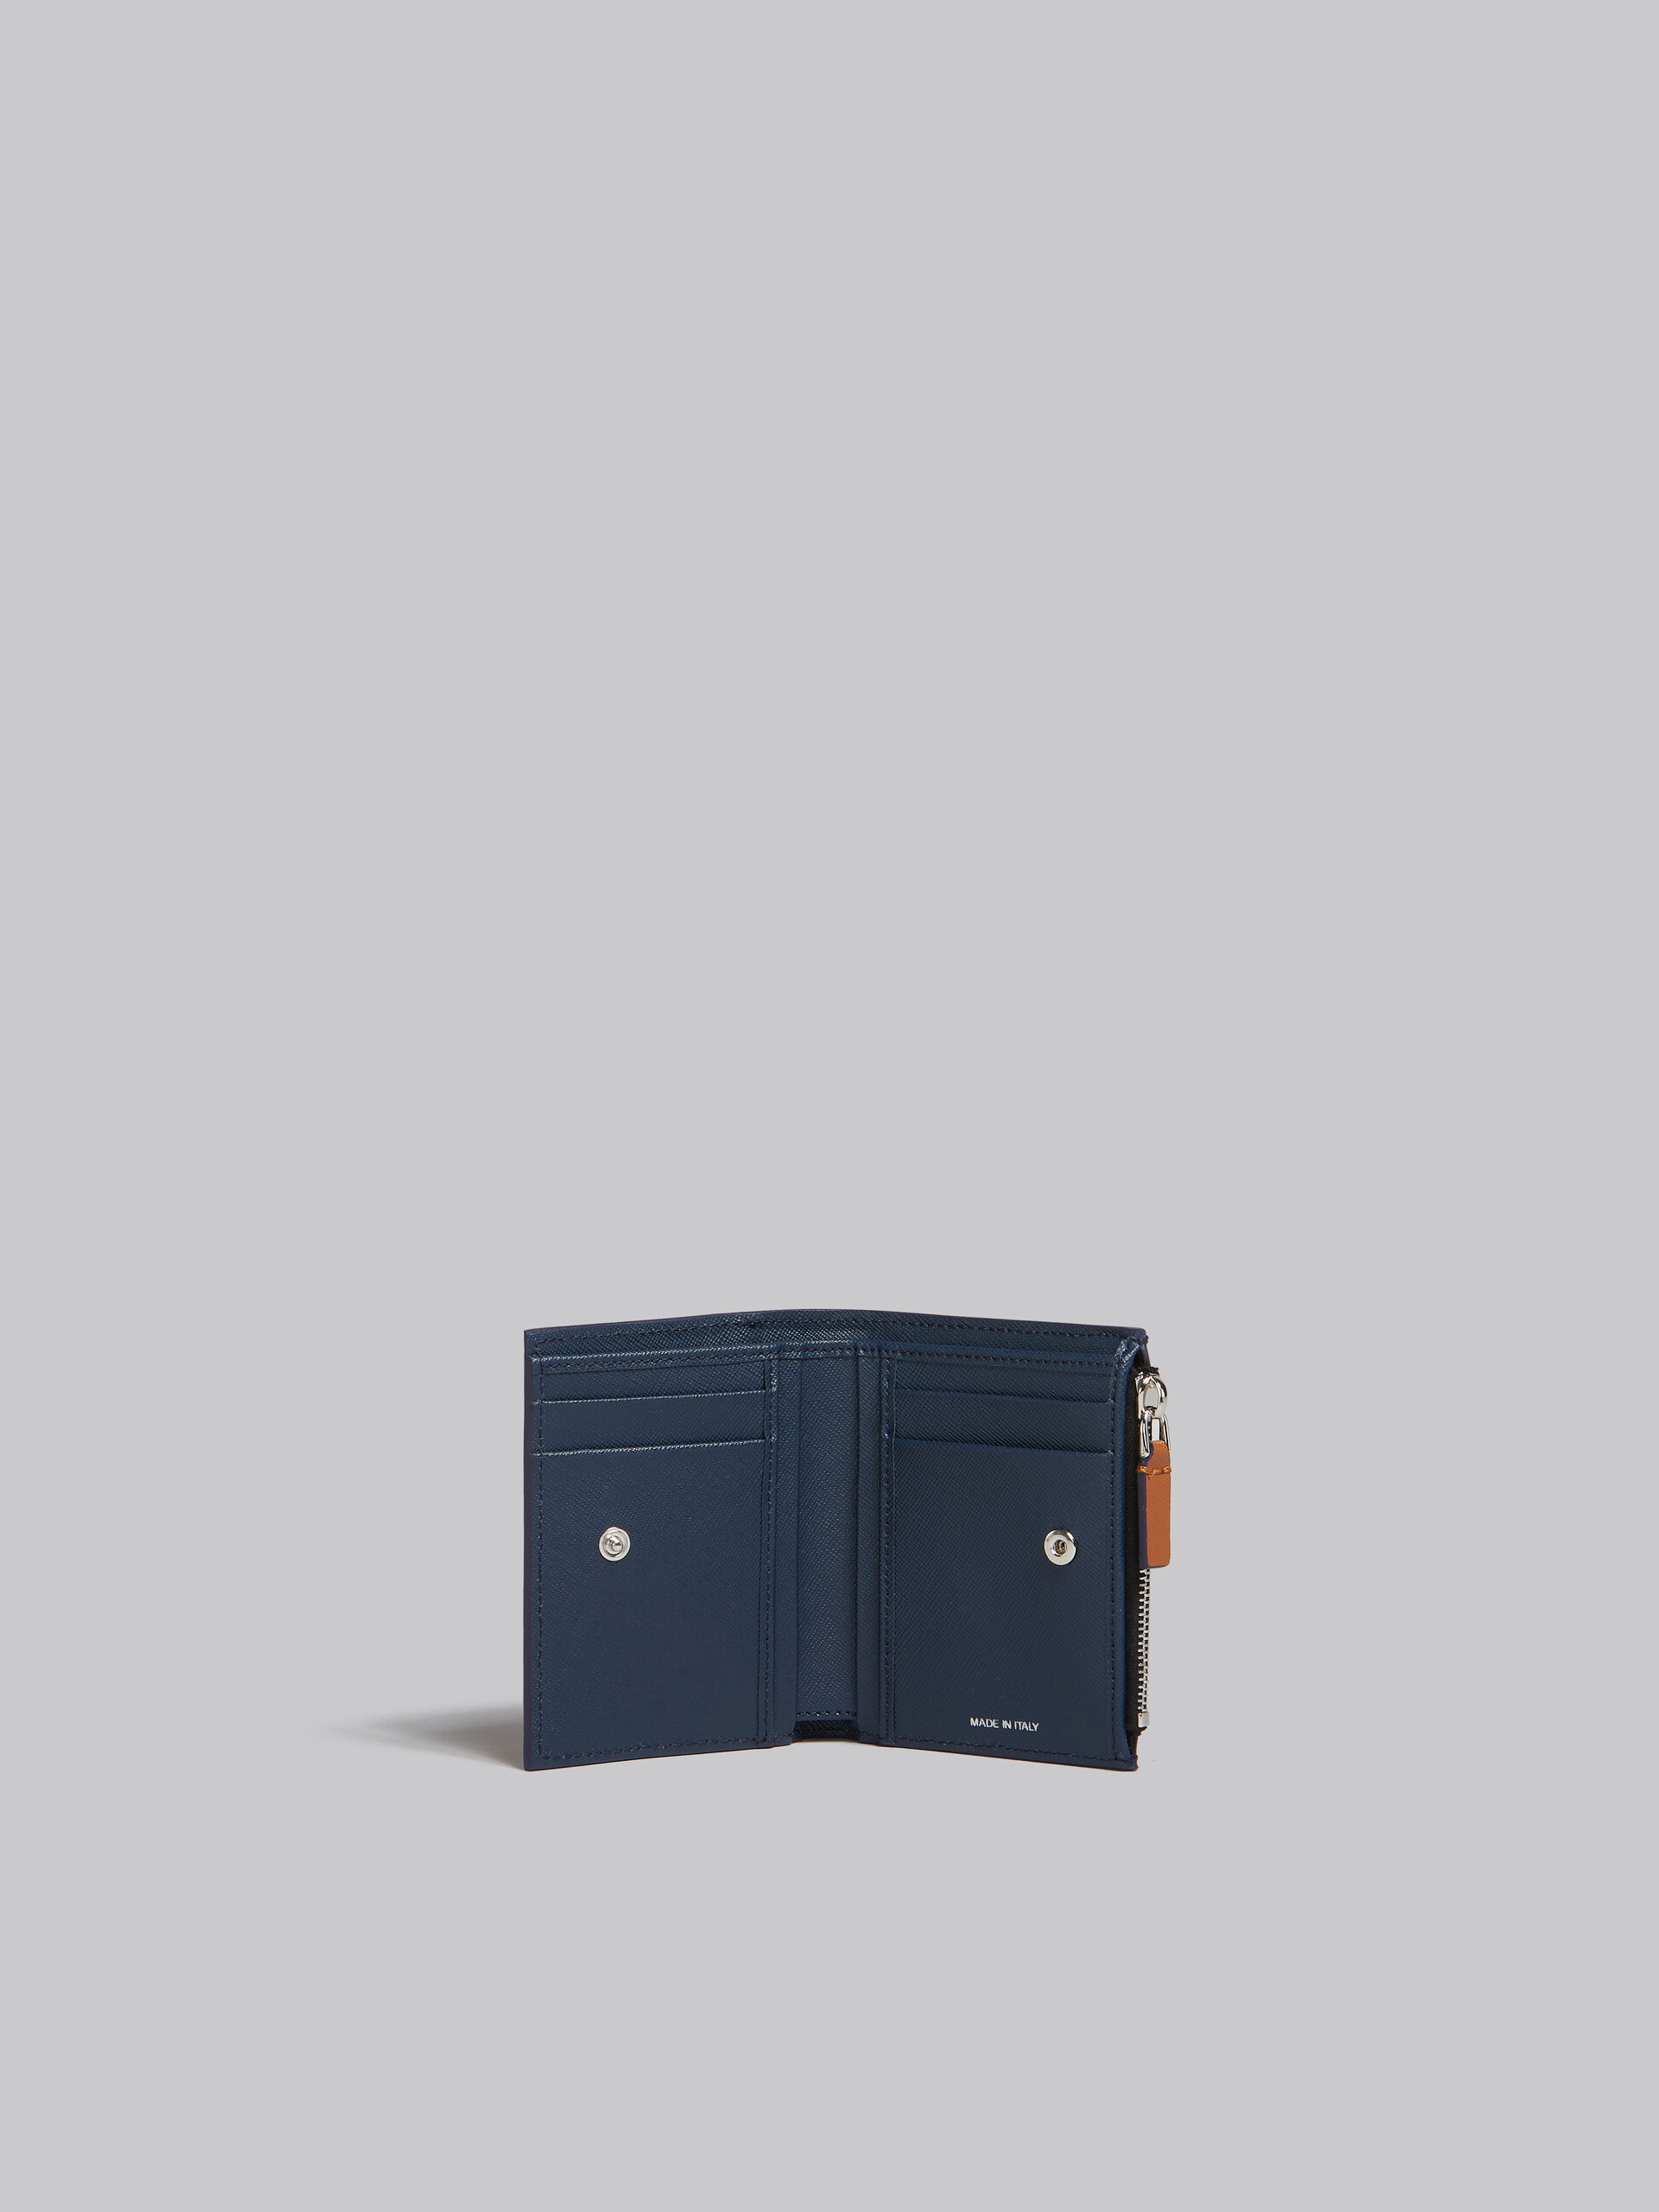 クリーム ディープブルー サフィアーノレザー製 二つ折りウォレット 、ファスナー式ポケット - 財布 - Image 2